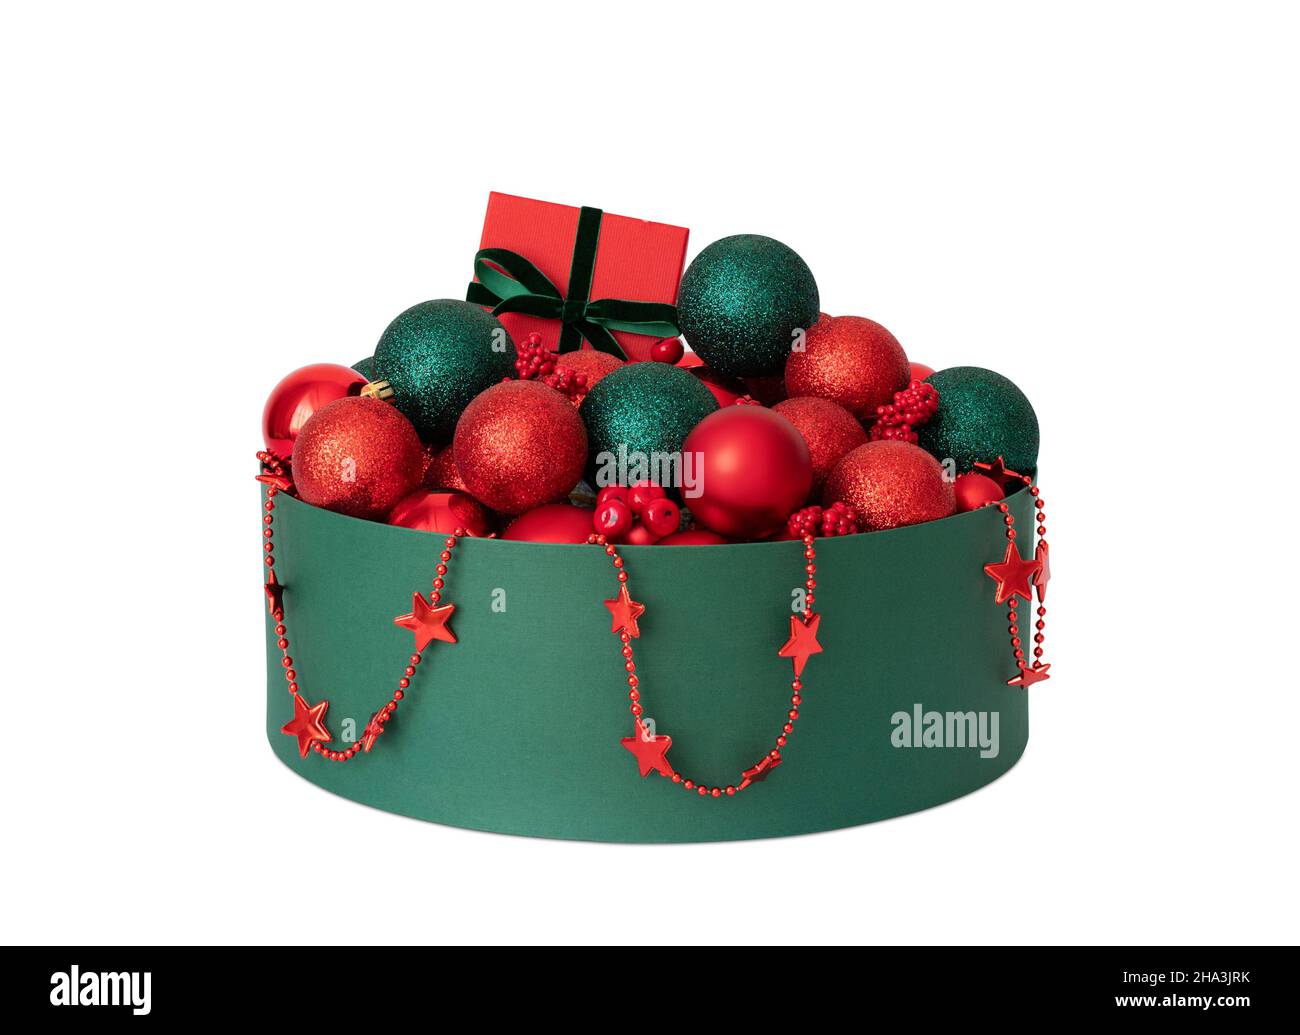 Decorazioni natalizie in una scatola isolata su sfondo bianco. Decorazioni natalizie rosse e verdi. Stoccaggio di accessori per le vacanze. Foto Stock